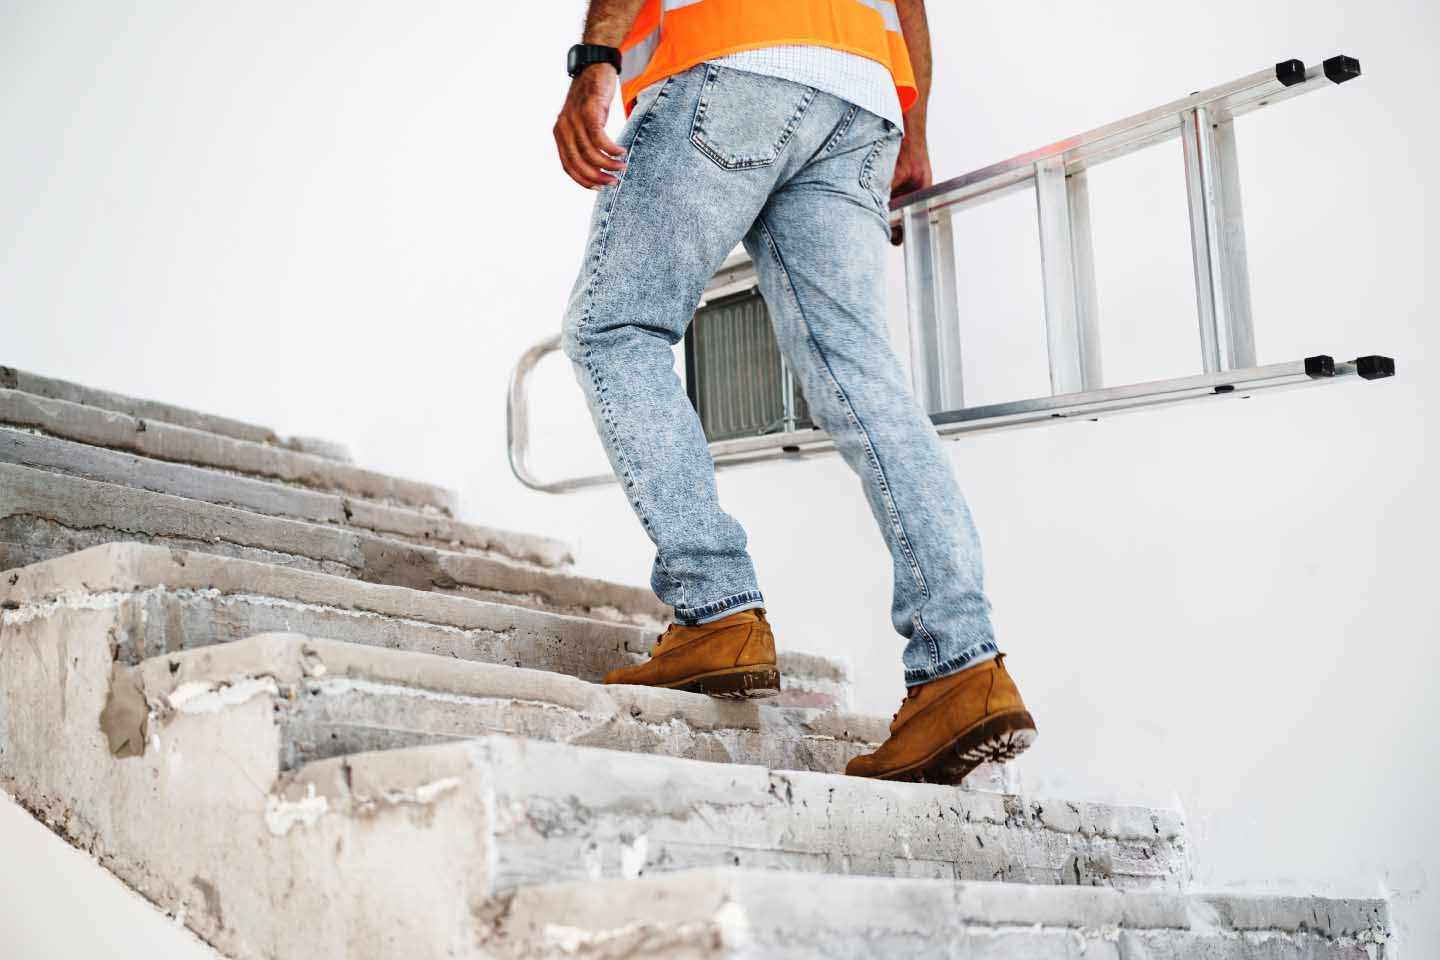 técnico trabajador trepando escaleras con escalera en mano para mantenimiento con chaleco retro-reflectivo